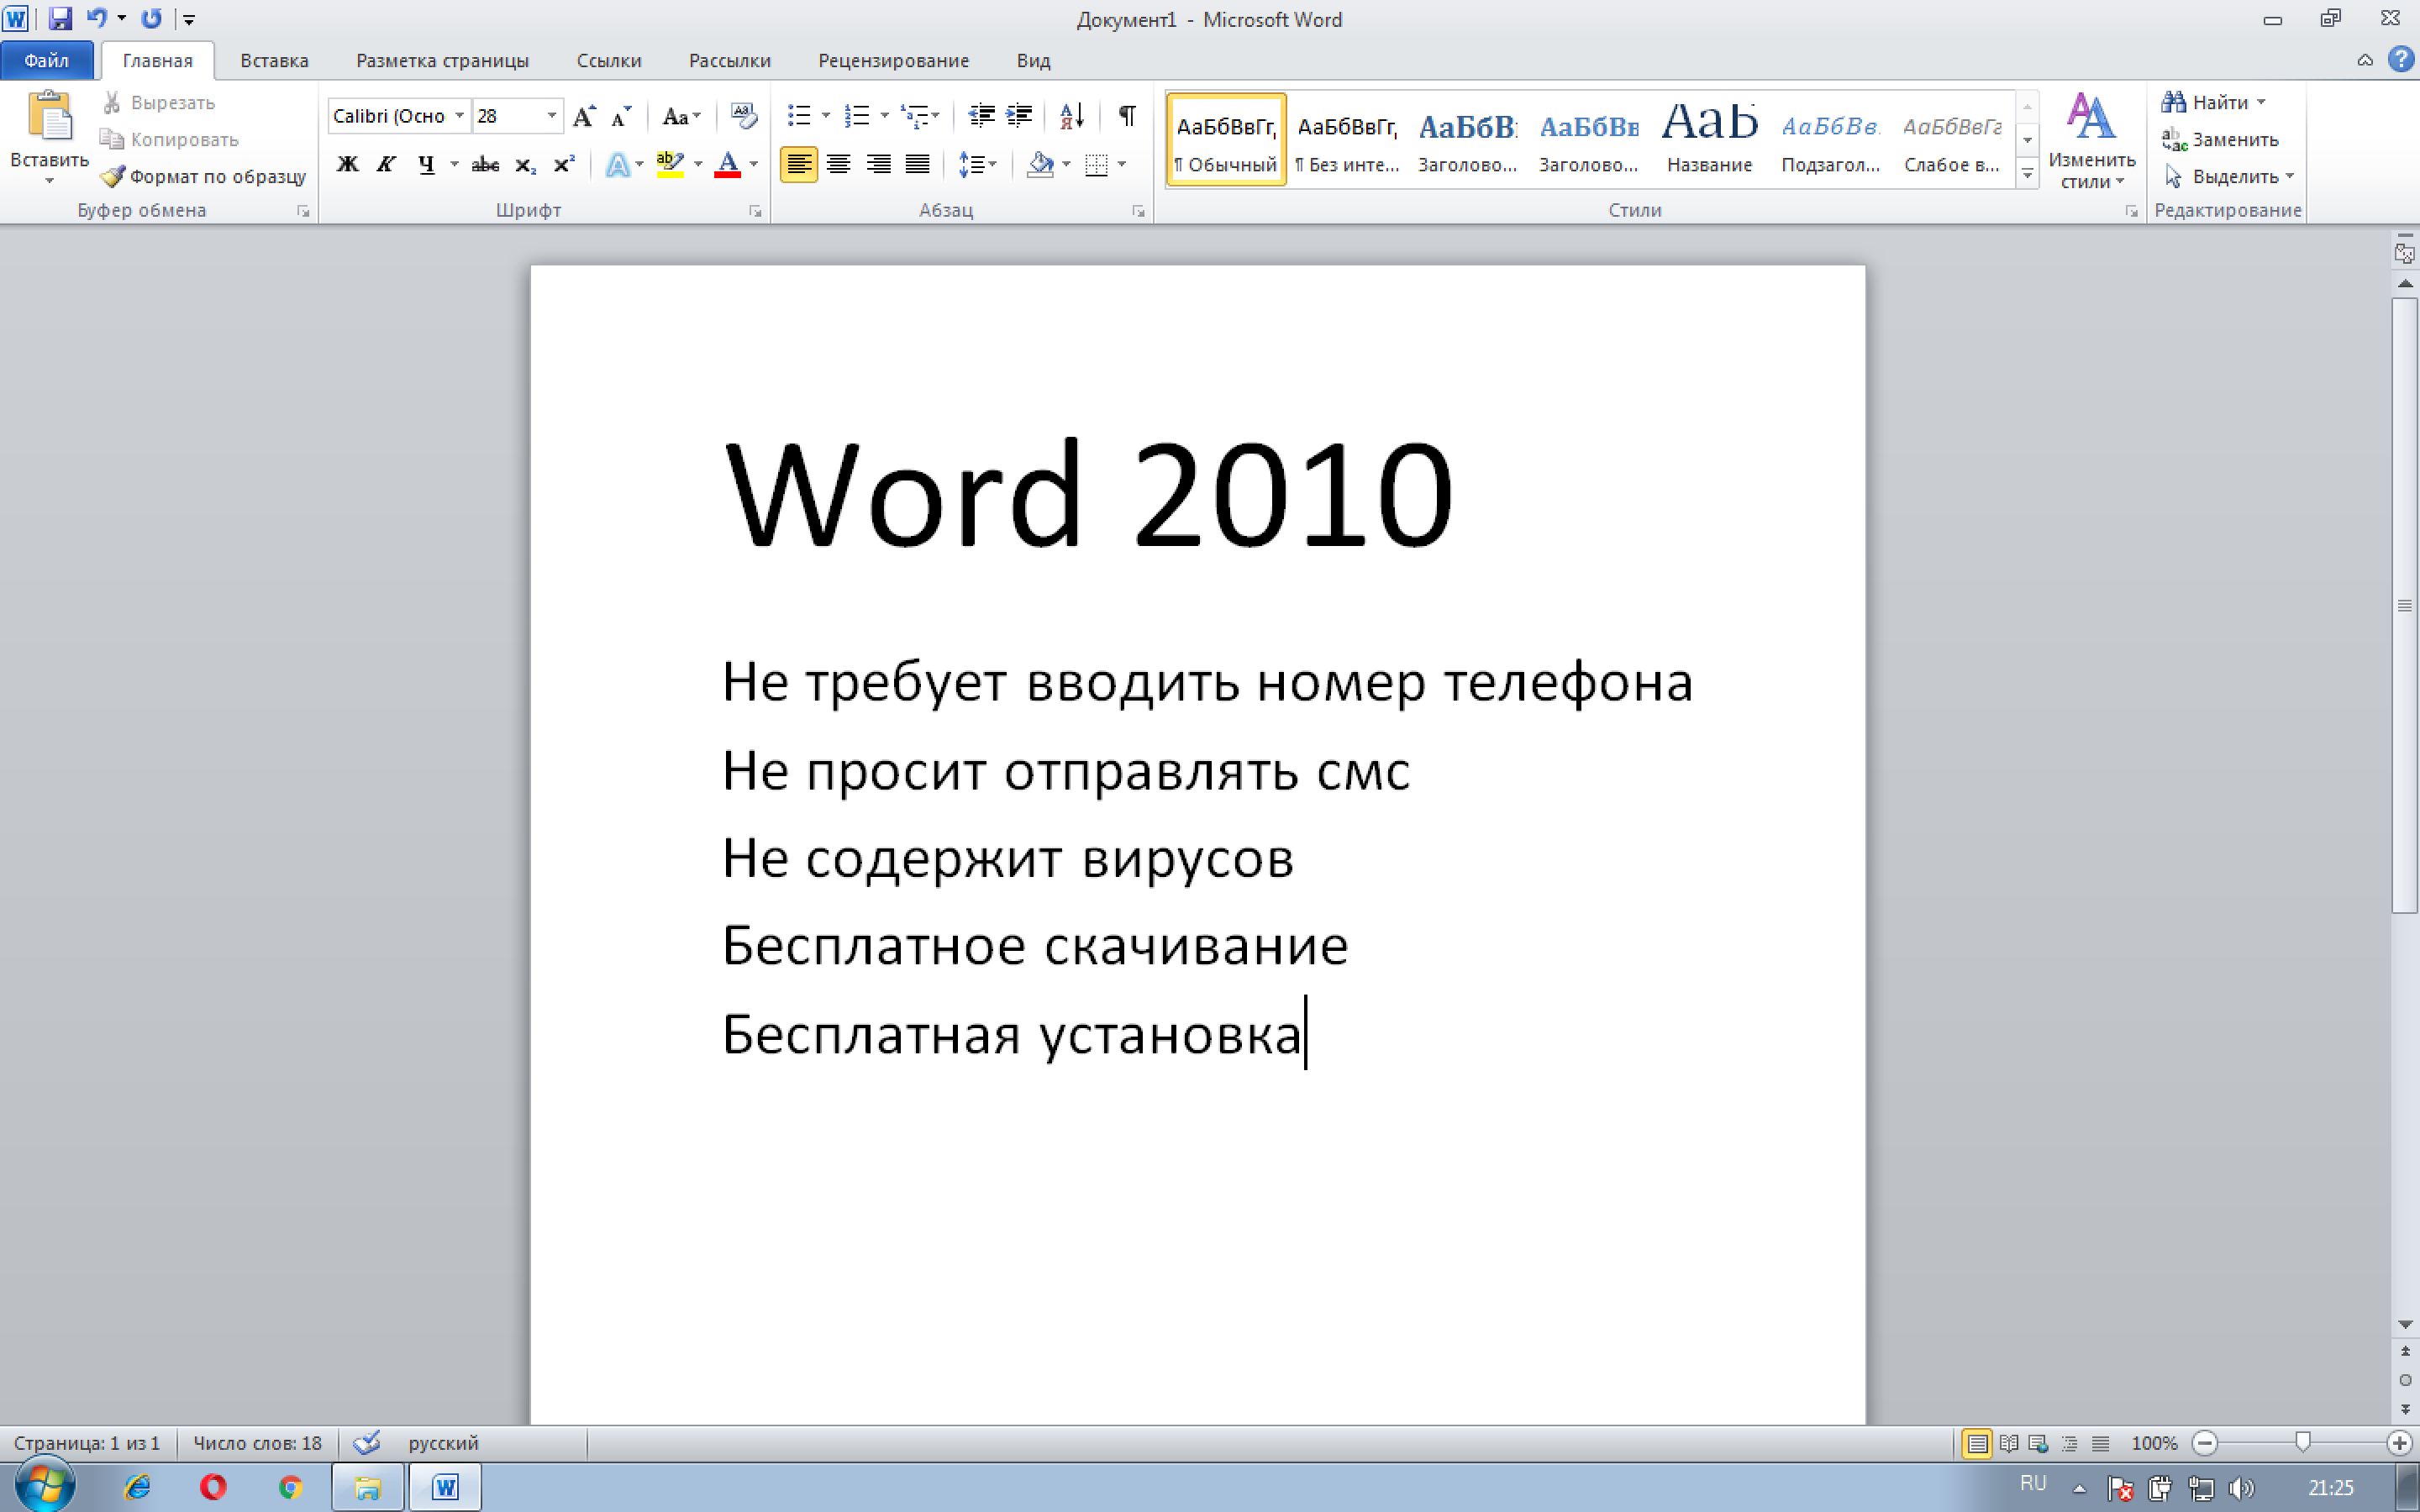 Word 2010 скачать бесплатно русская версия для Windows
